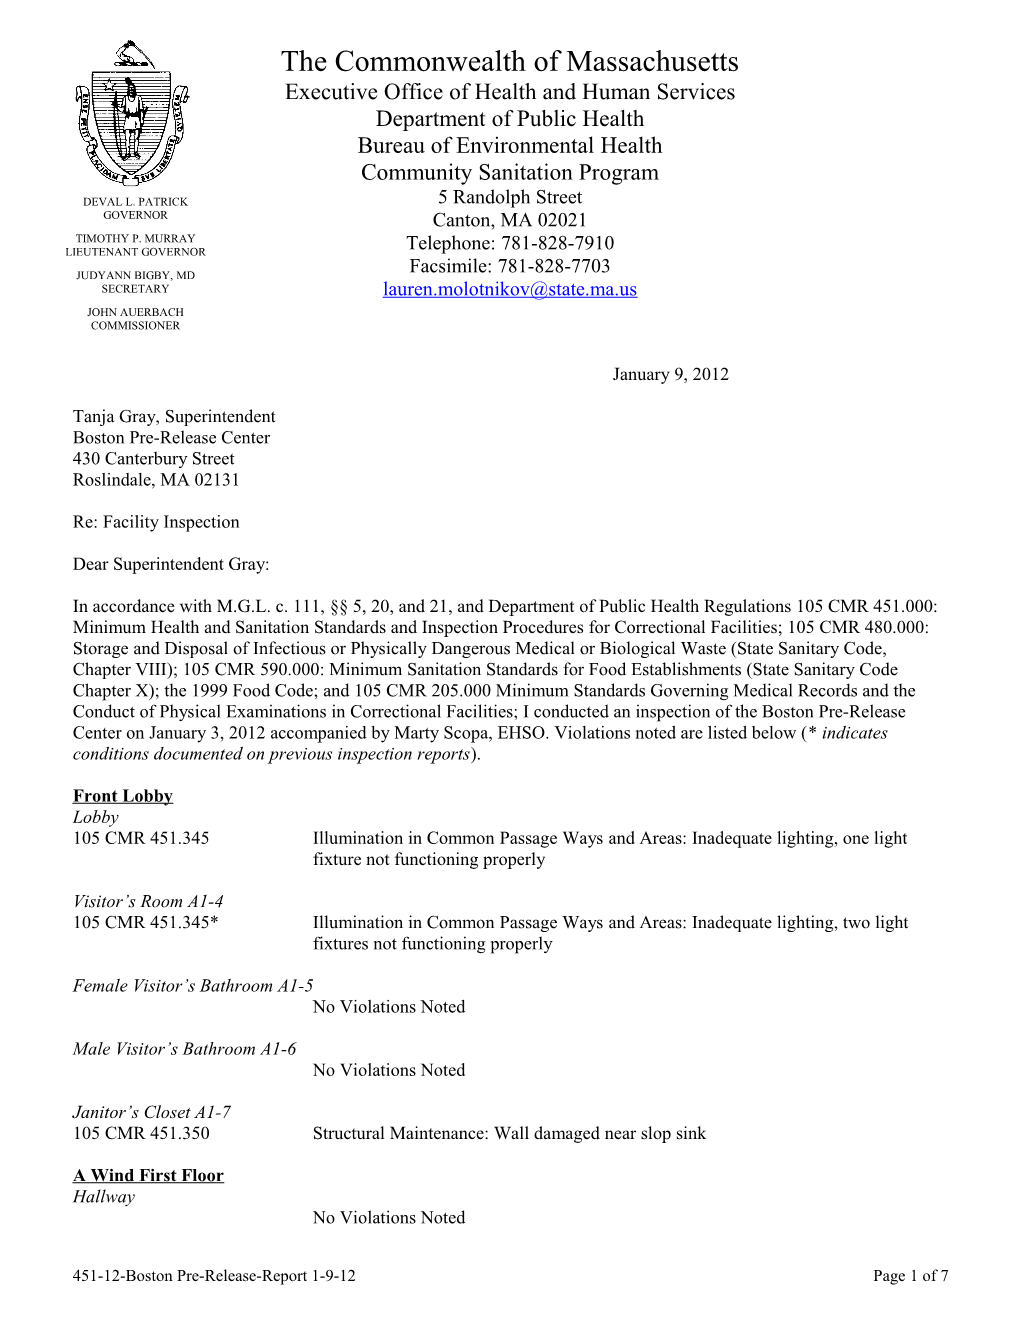 Boston Pre-Release Center Facility Inspection Report-01/09/2012